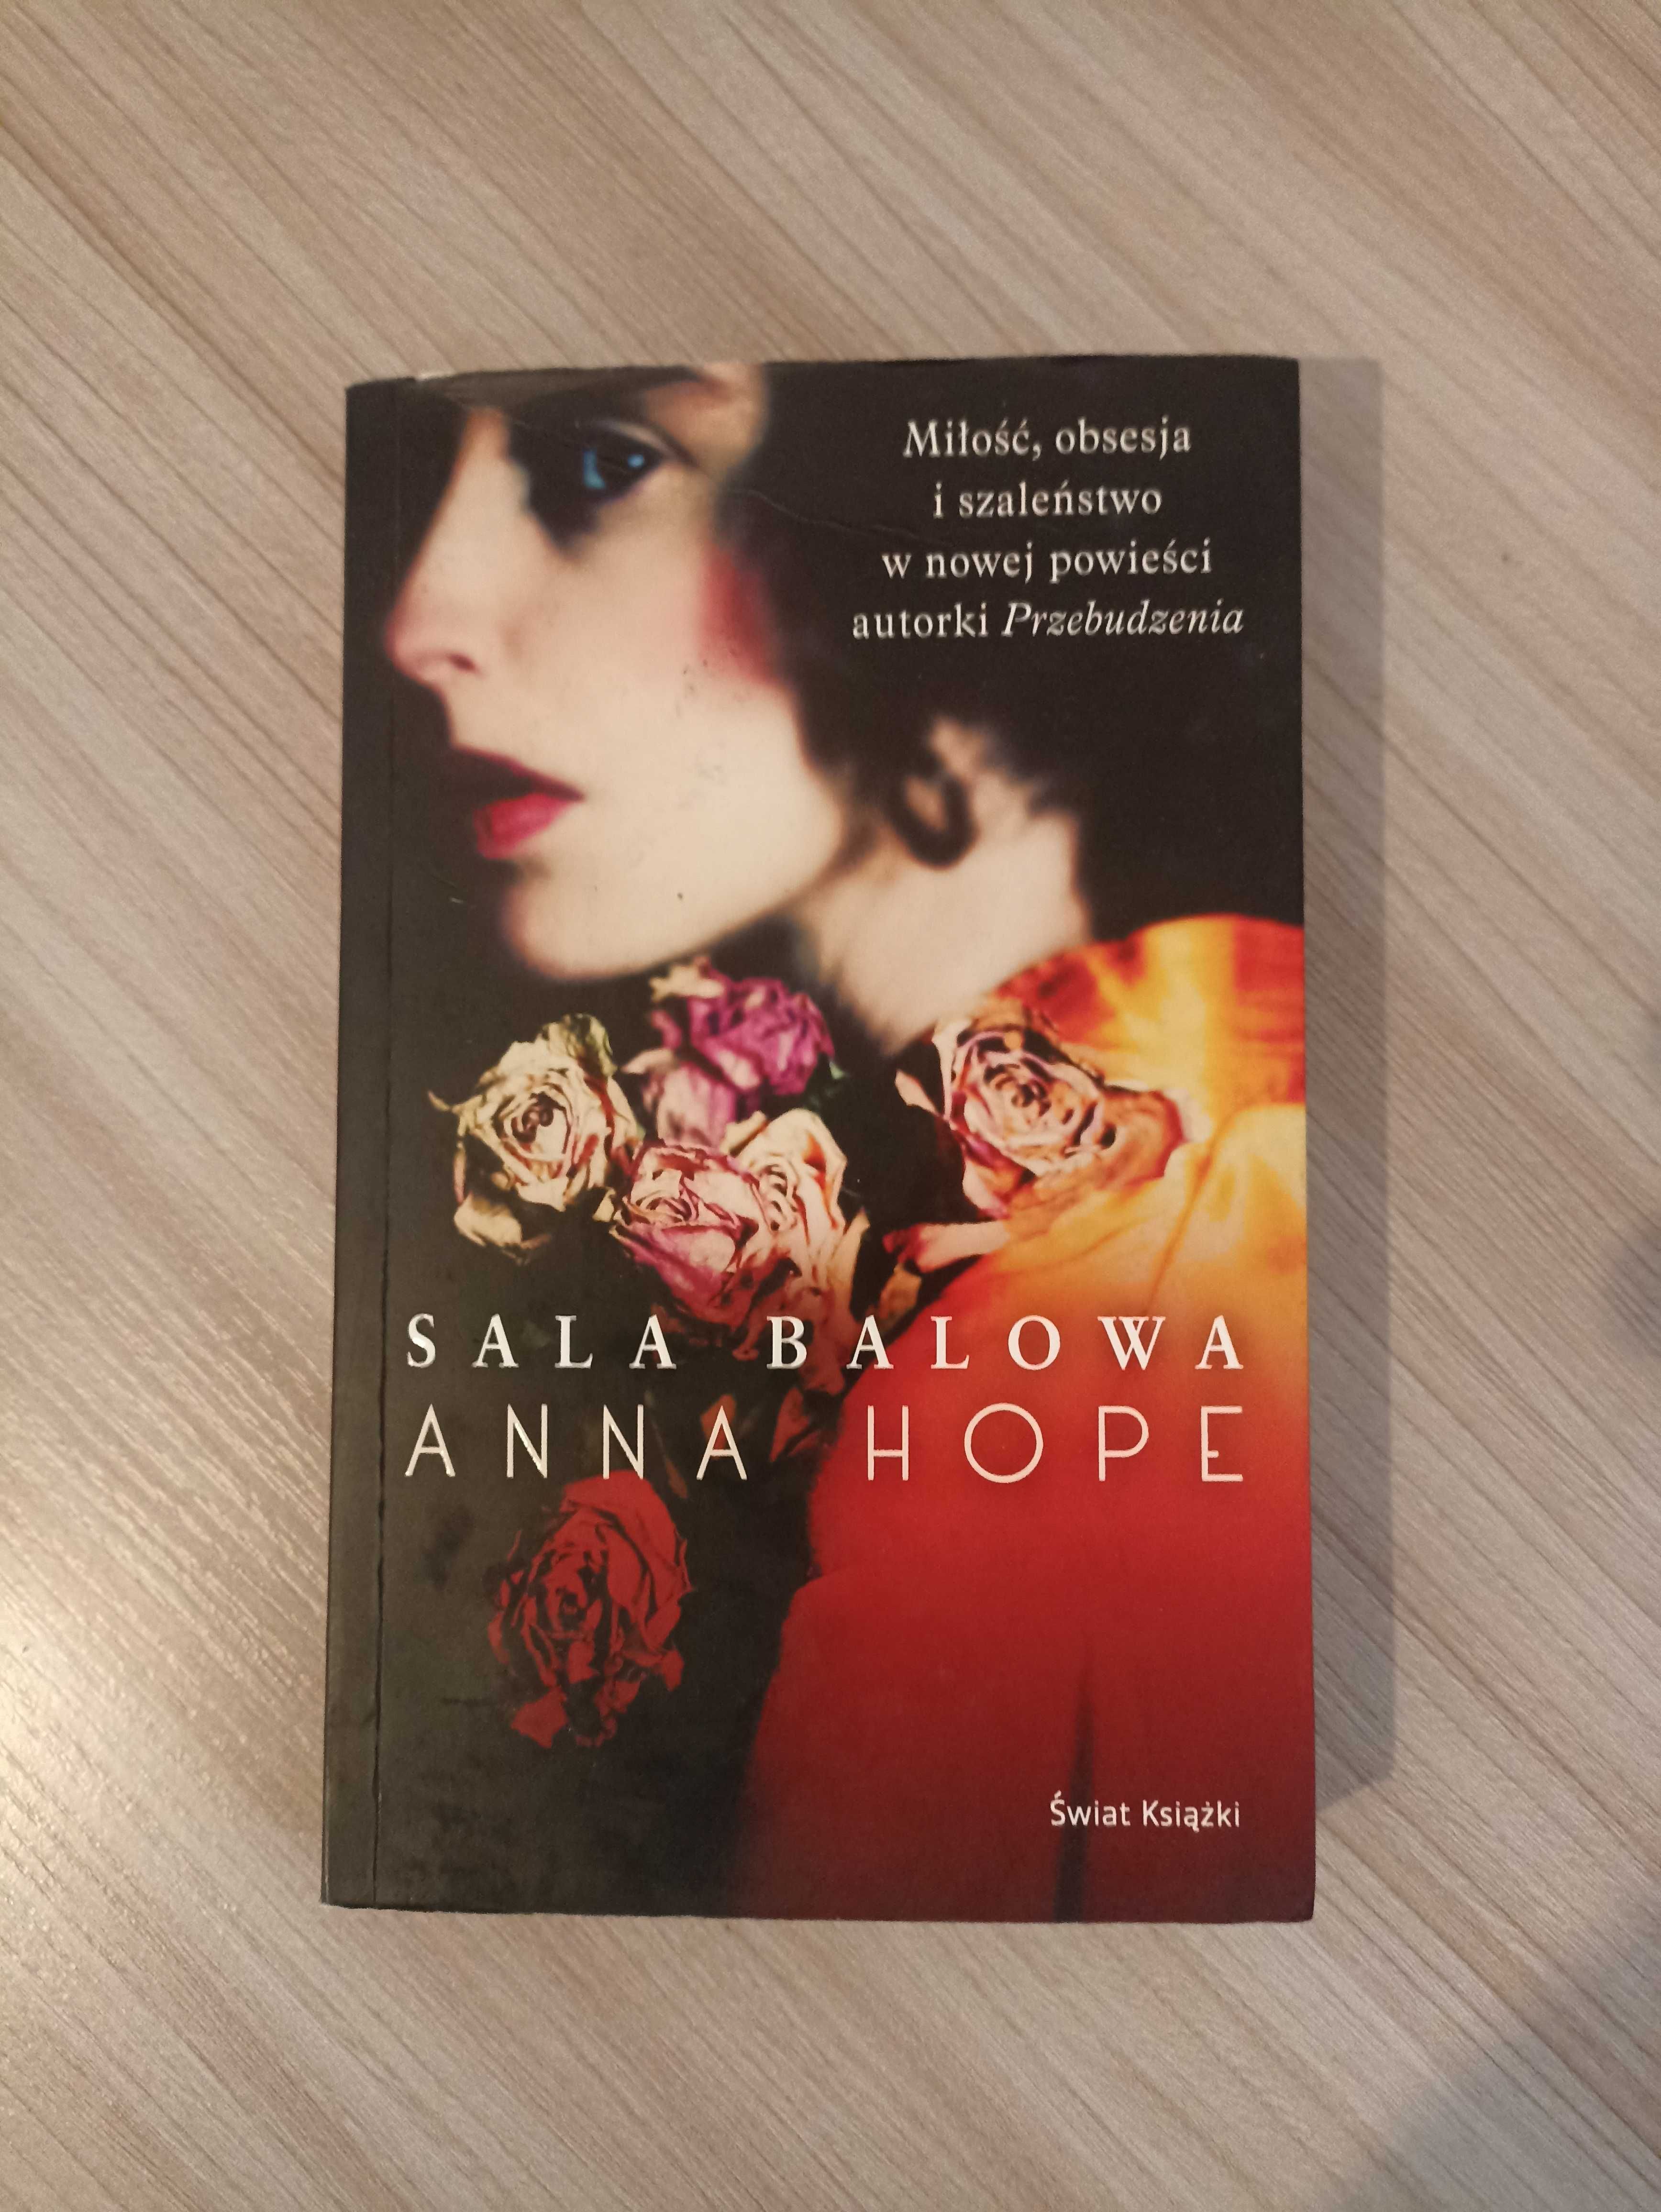 Książka Anna Hope "Sala balowa"
Przypada kurzem na półce"